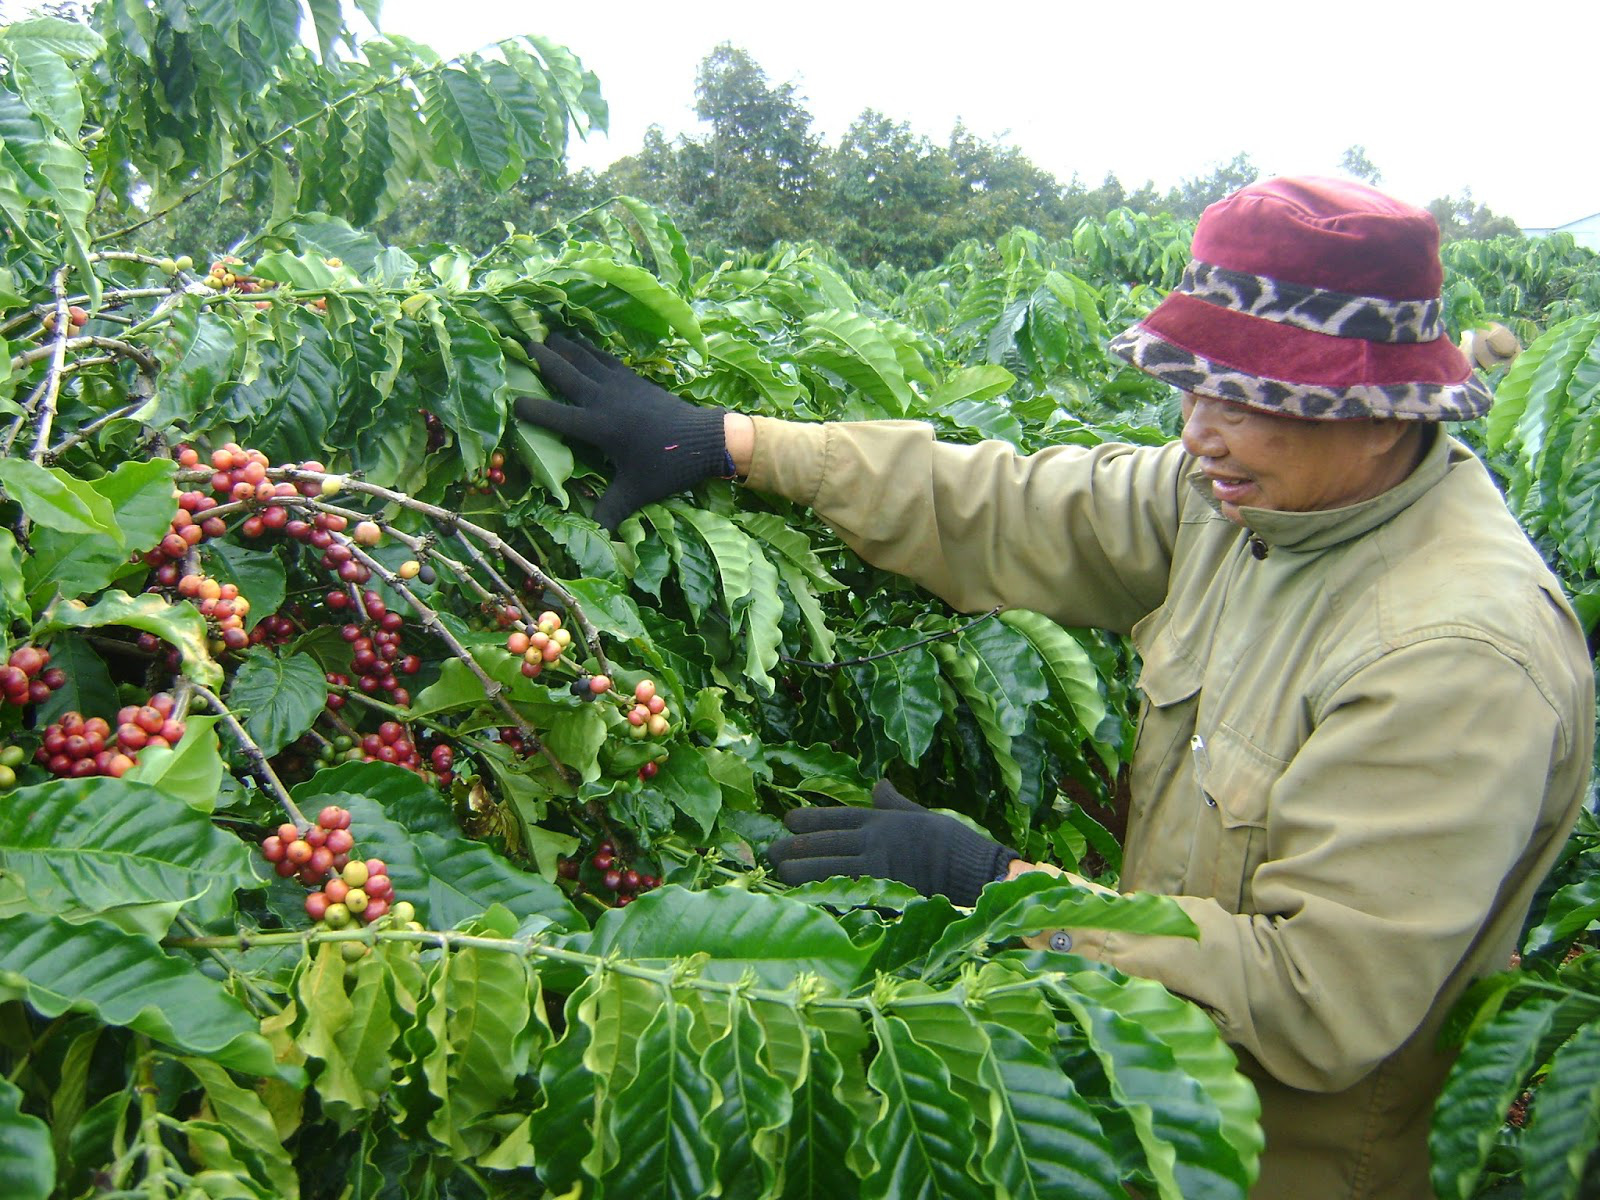 Đại biểu Quốc hội Gia Lai nói tiêu, cà phê cũng tính tỷ lệ che phủ rừng, Tổng cục Lâm nghiệp khẳng định: Không - Ảnh 3.